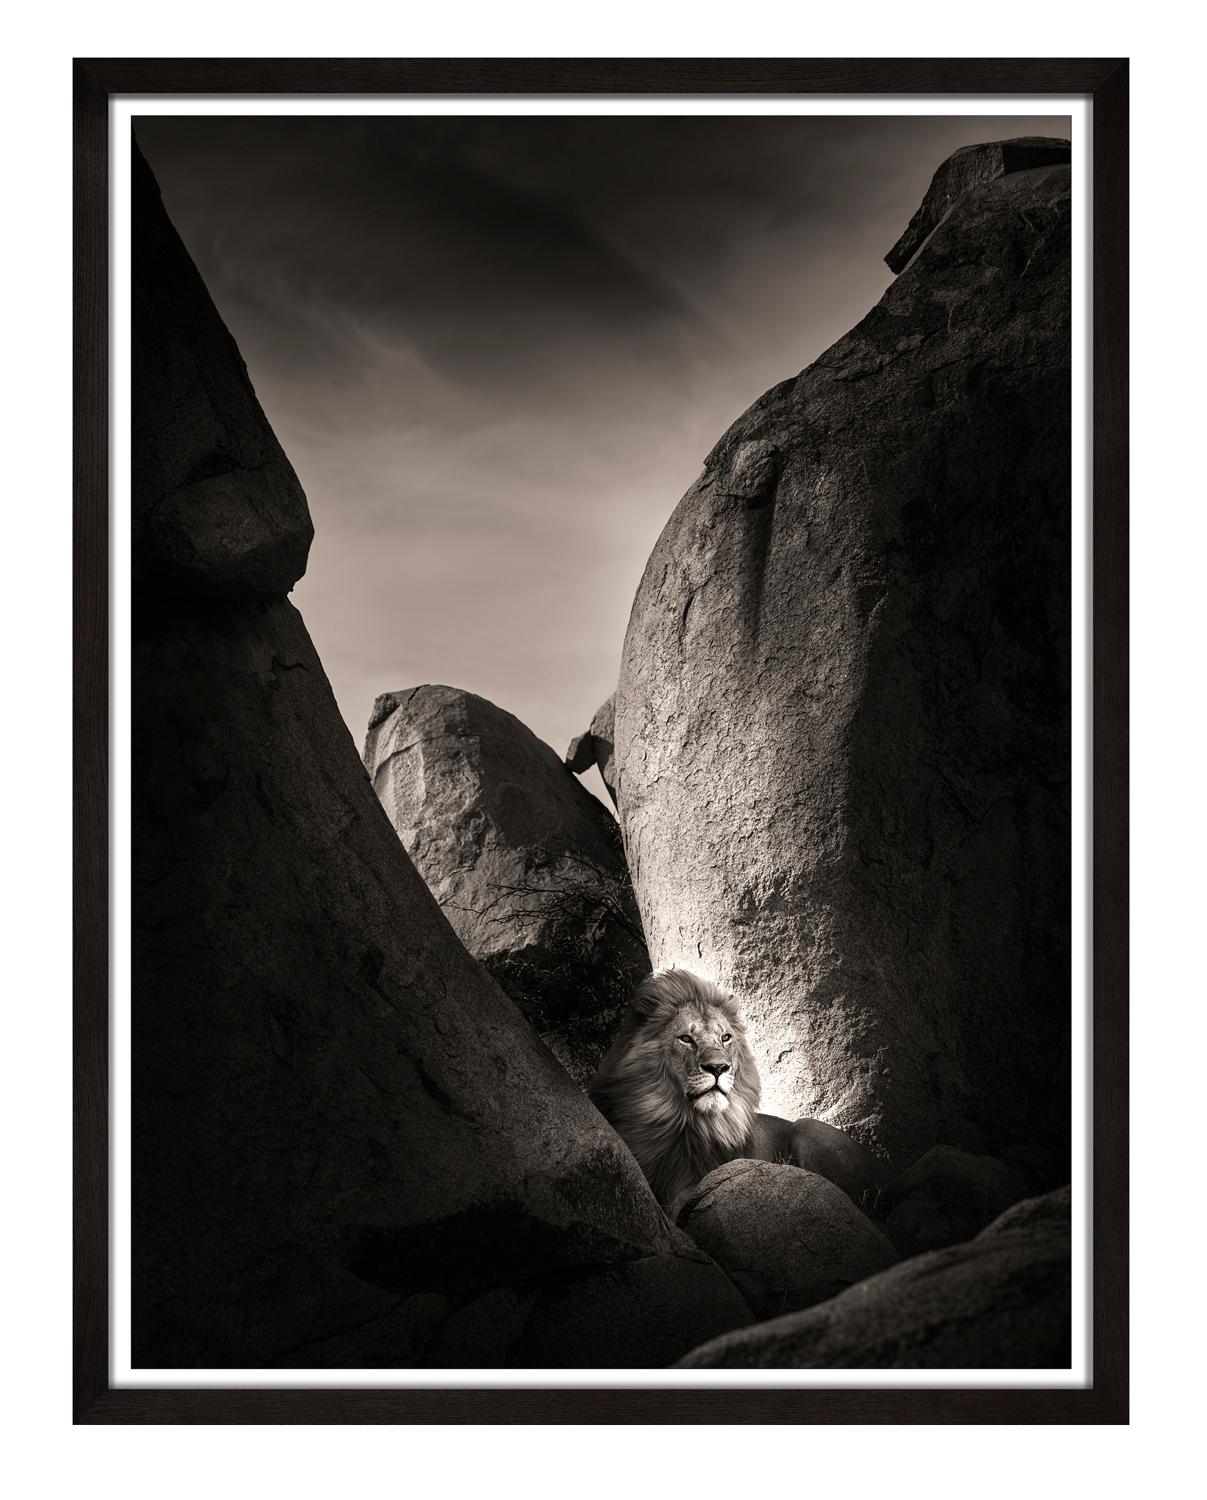 Le Lion Rock I, noir et blanc, animal, Afrique, photographie - Photograph de Joachim Schmeisser